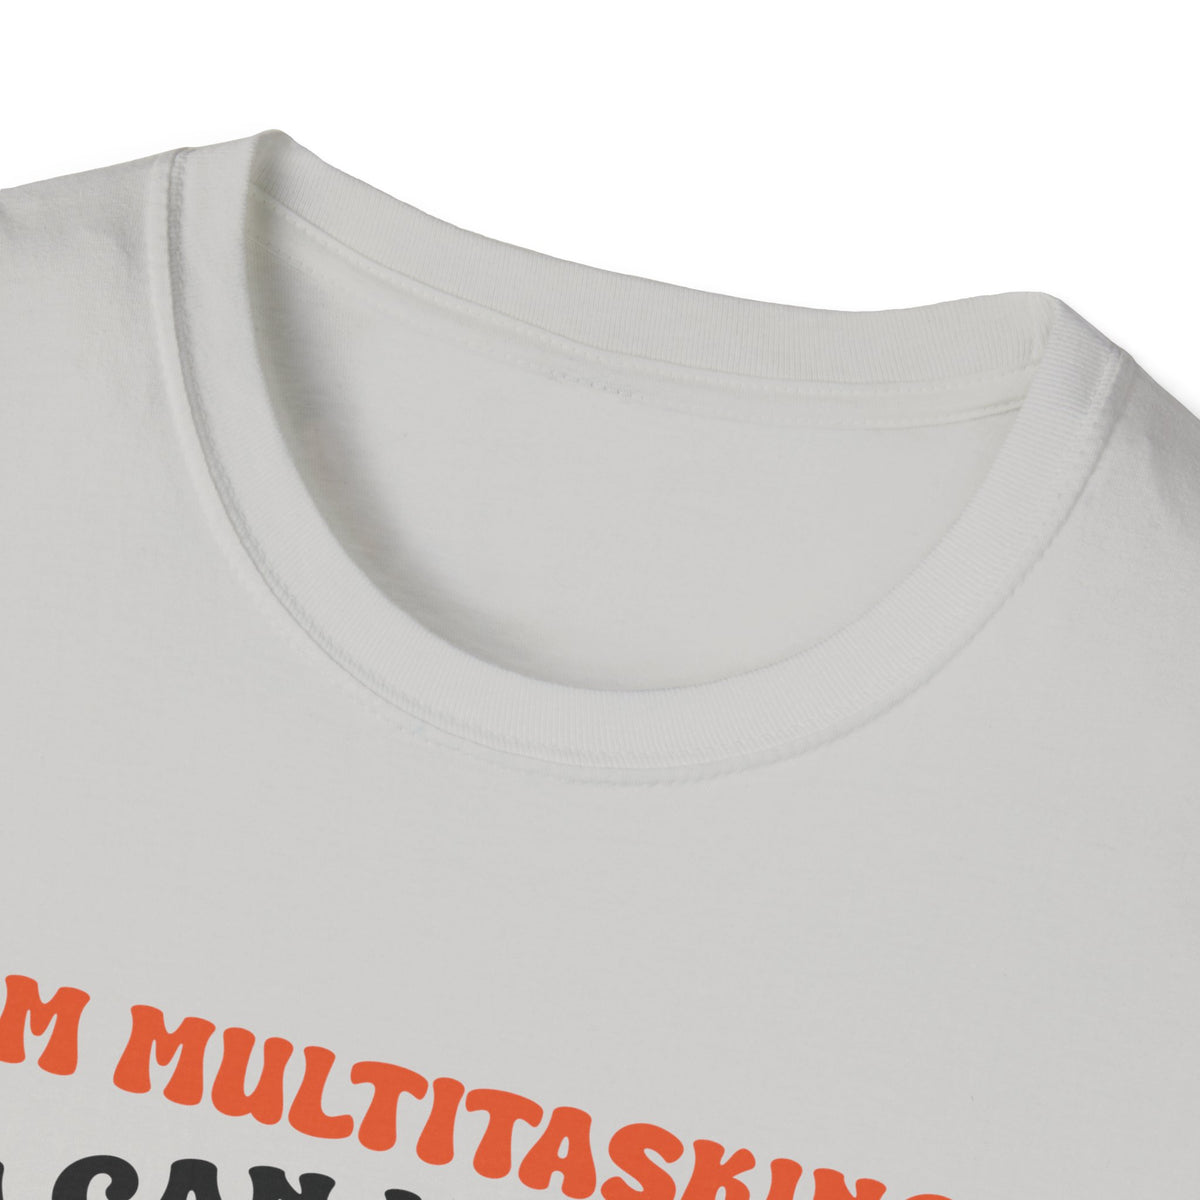 Multitasking Unisex Softstyle T-Shirt